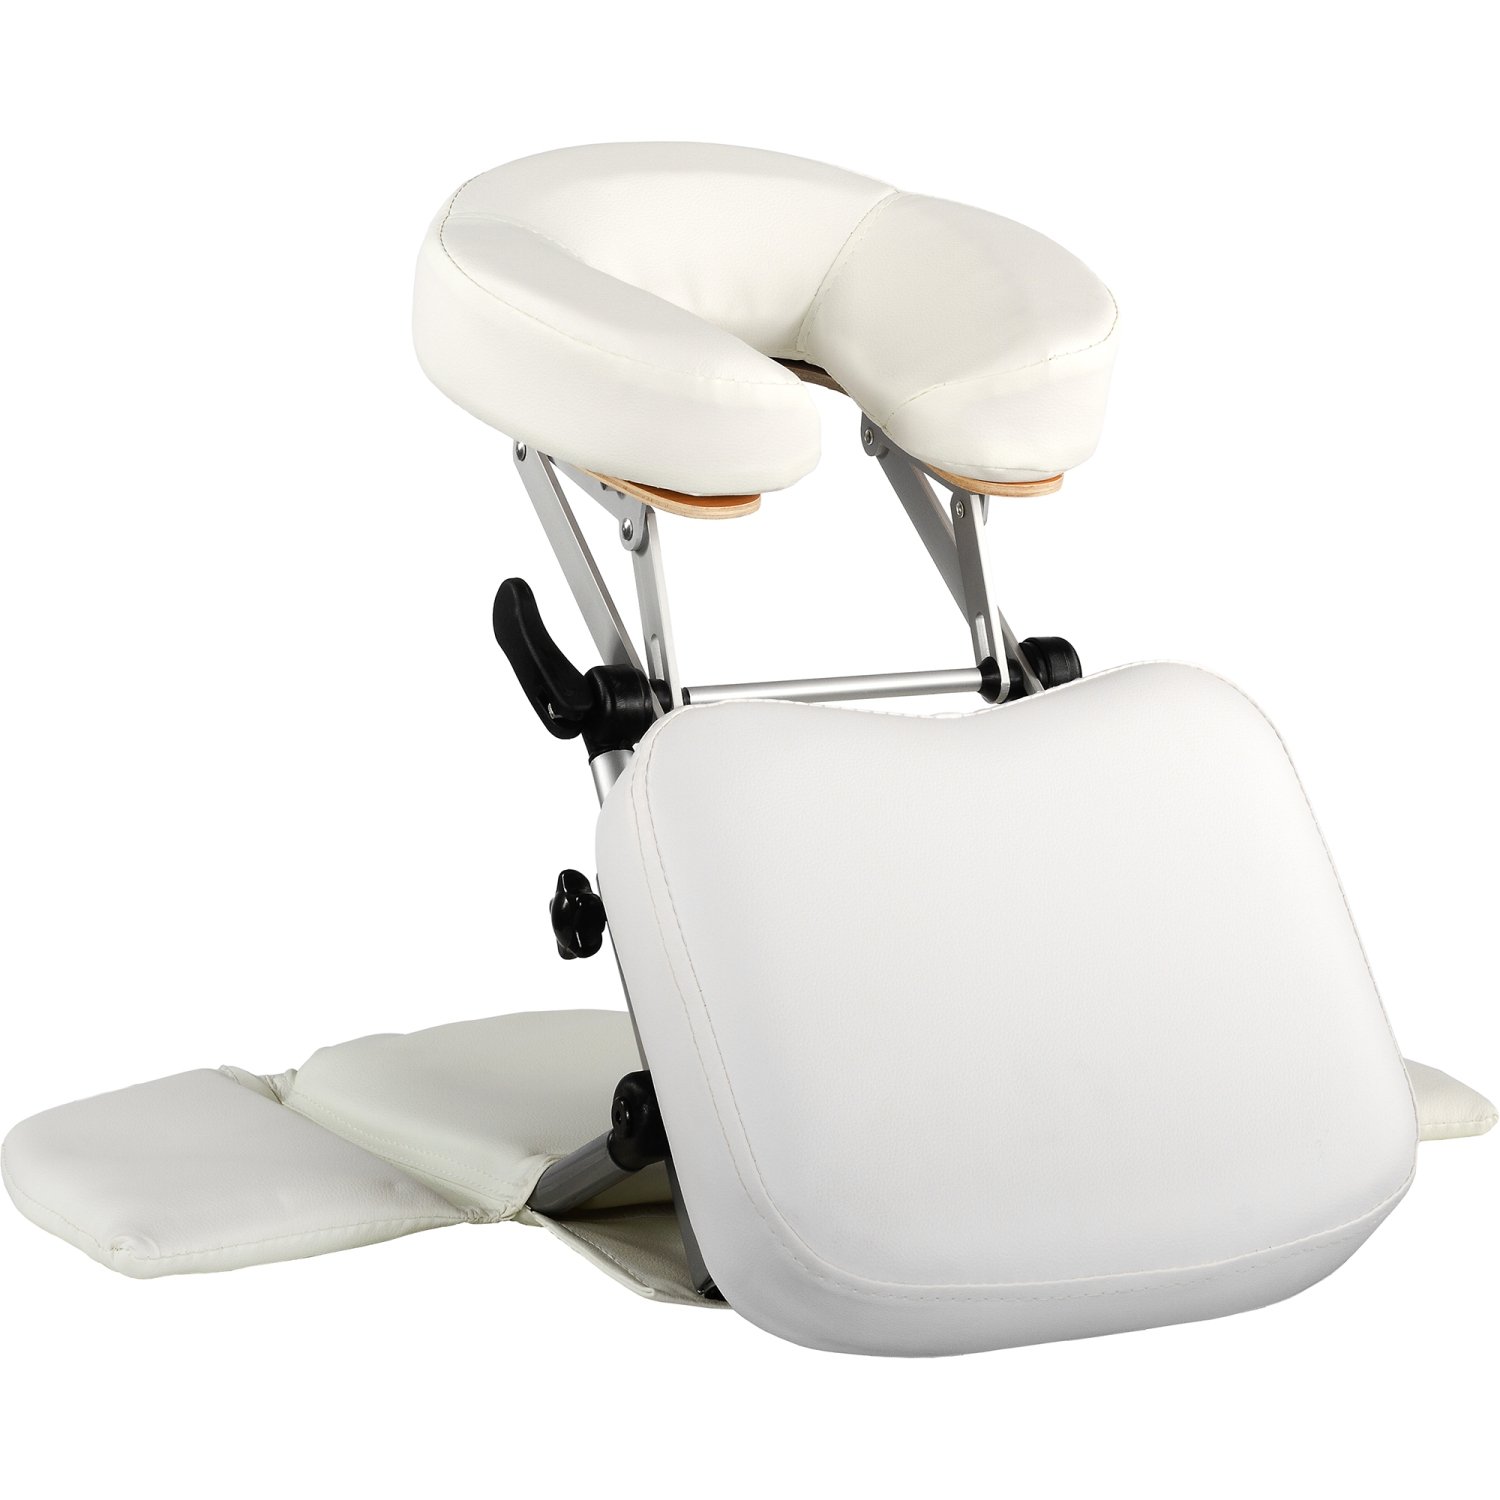 MOVIT Massage Tischaufsatz/Mobile Kopfstütze, Faltbarer Alu Rahmen, inkl. Tragetasche, schadstoffgeprüft